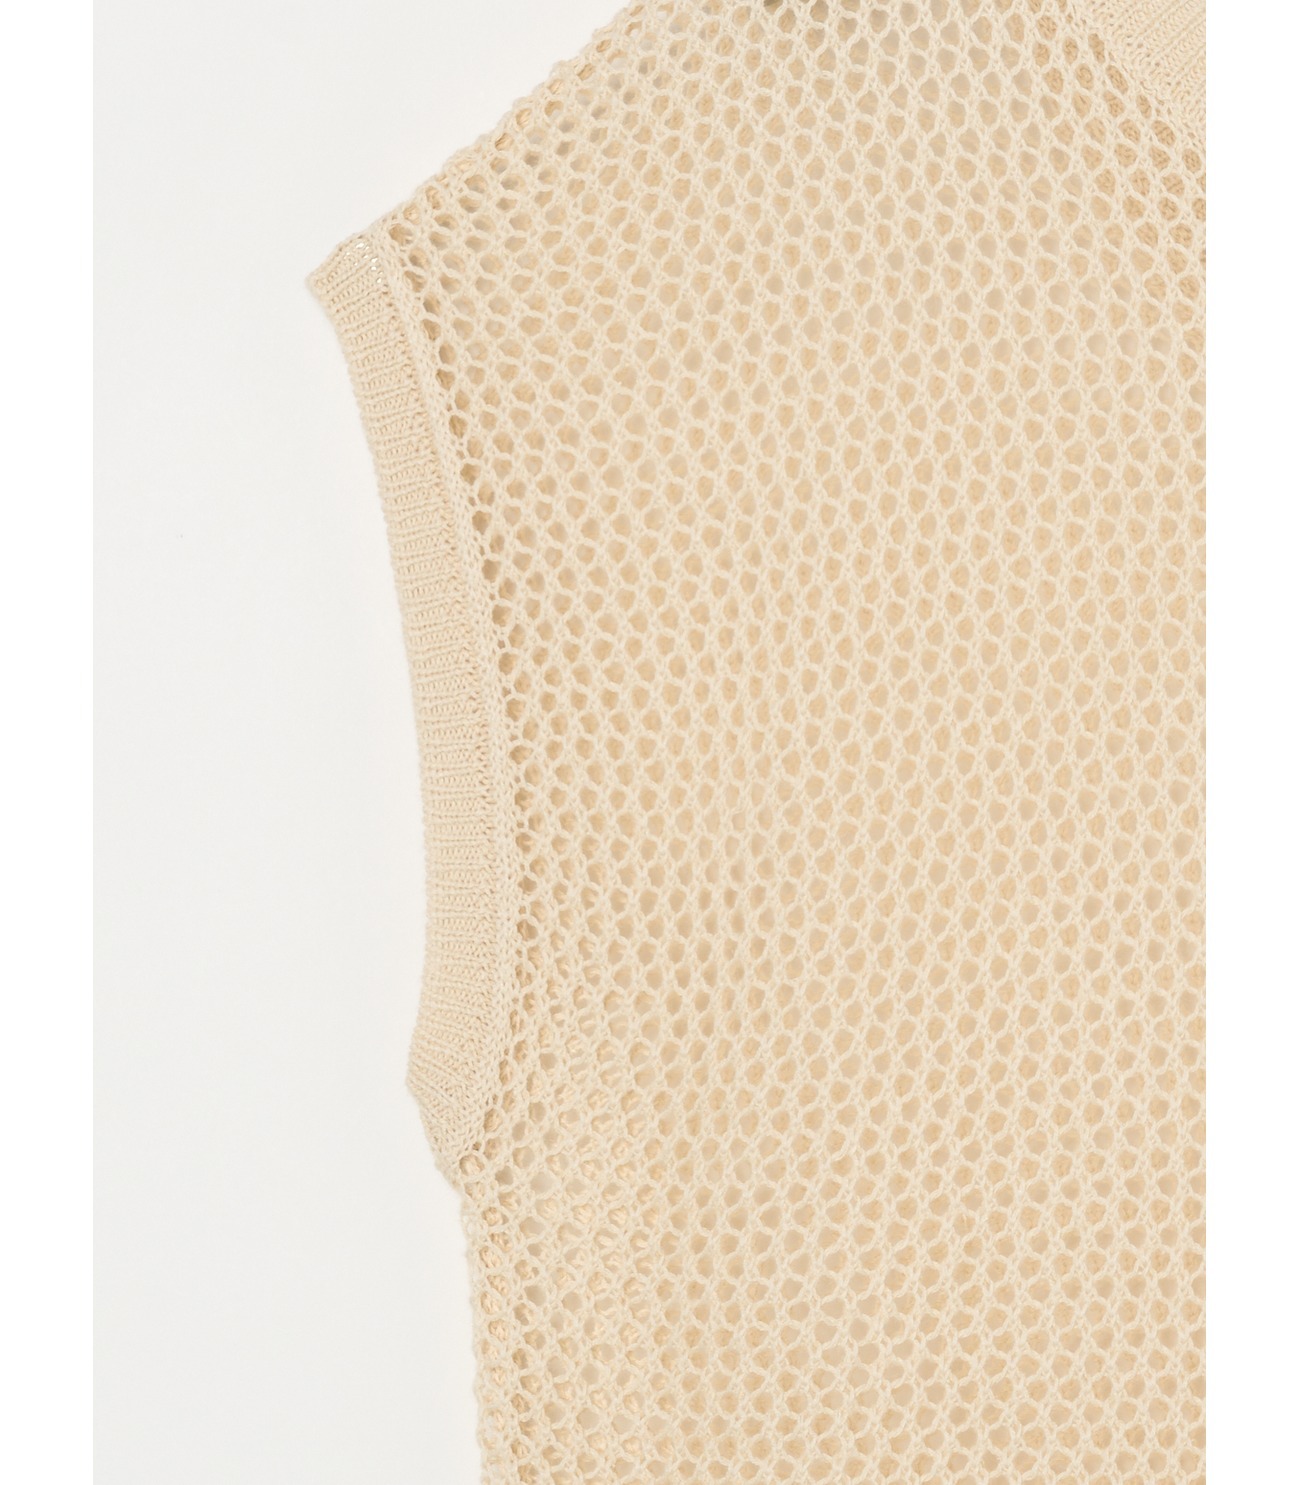 Cotton linen mesh s/s top 詳細画像 beige 3